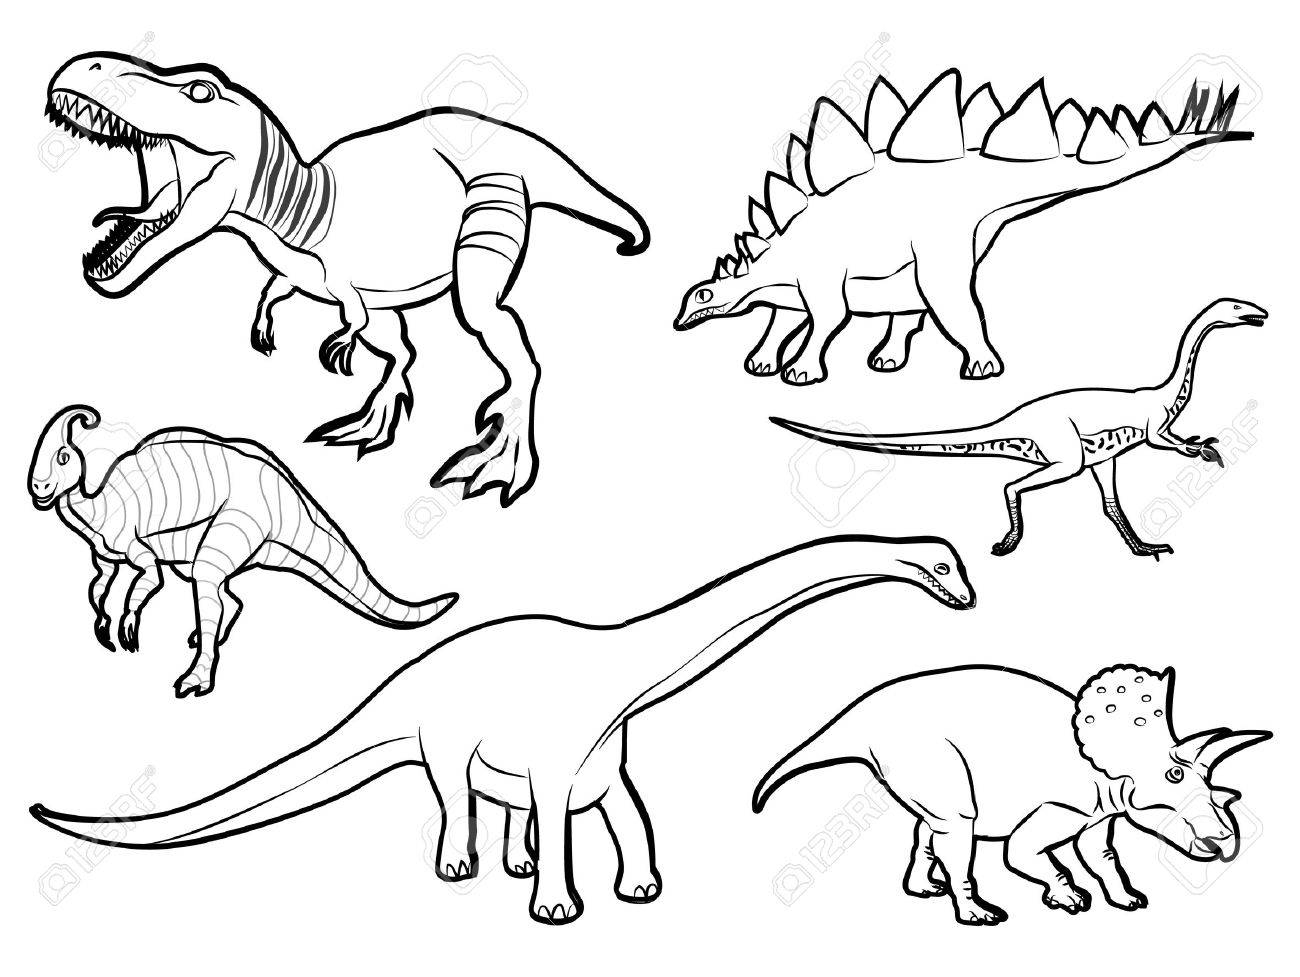 Динозавры разные чб